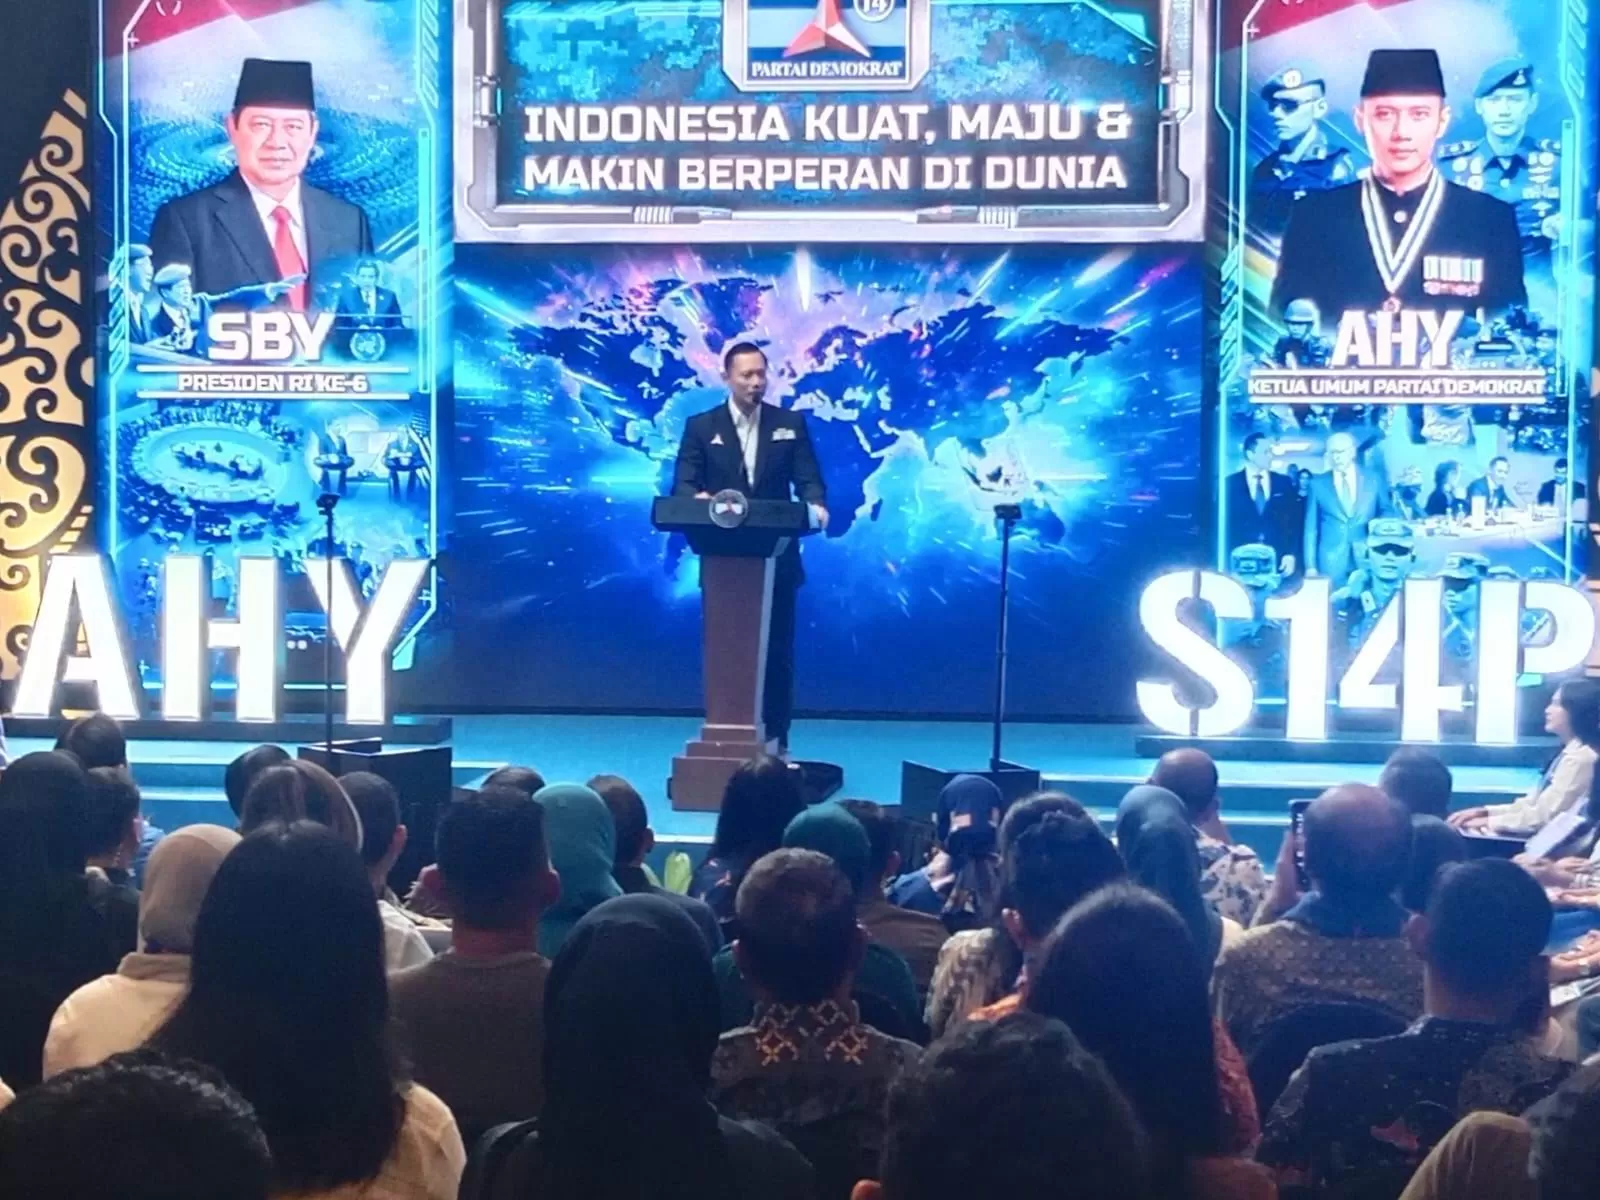 Pidato politik di Jogja, AHY tekankan pentingnya Indonesia memperbesar peran menjaga perdamaian dunia